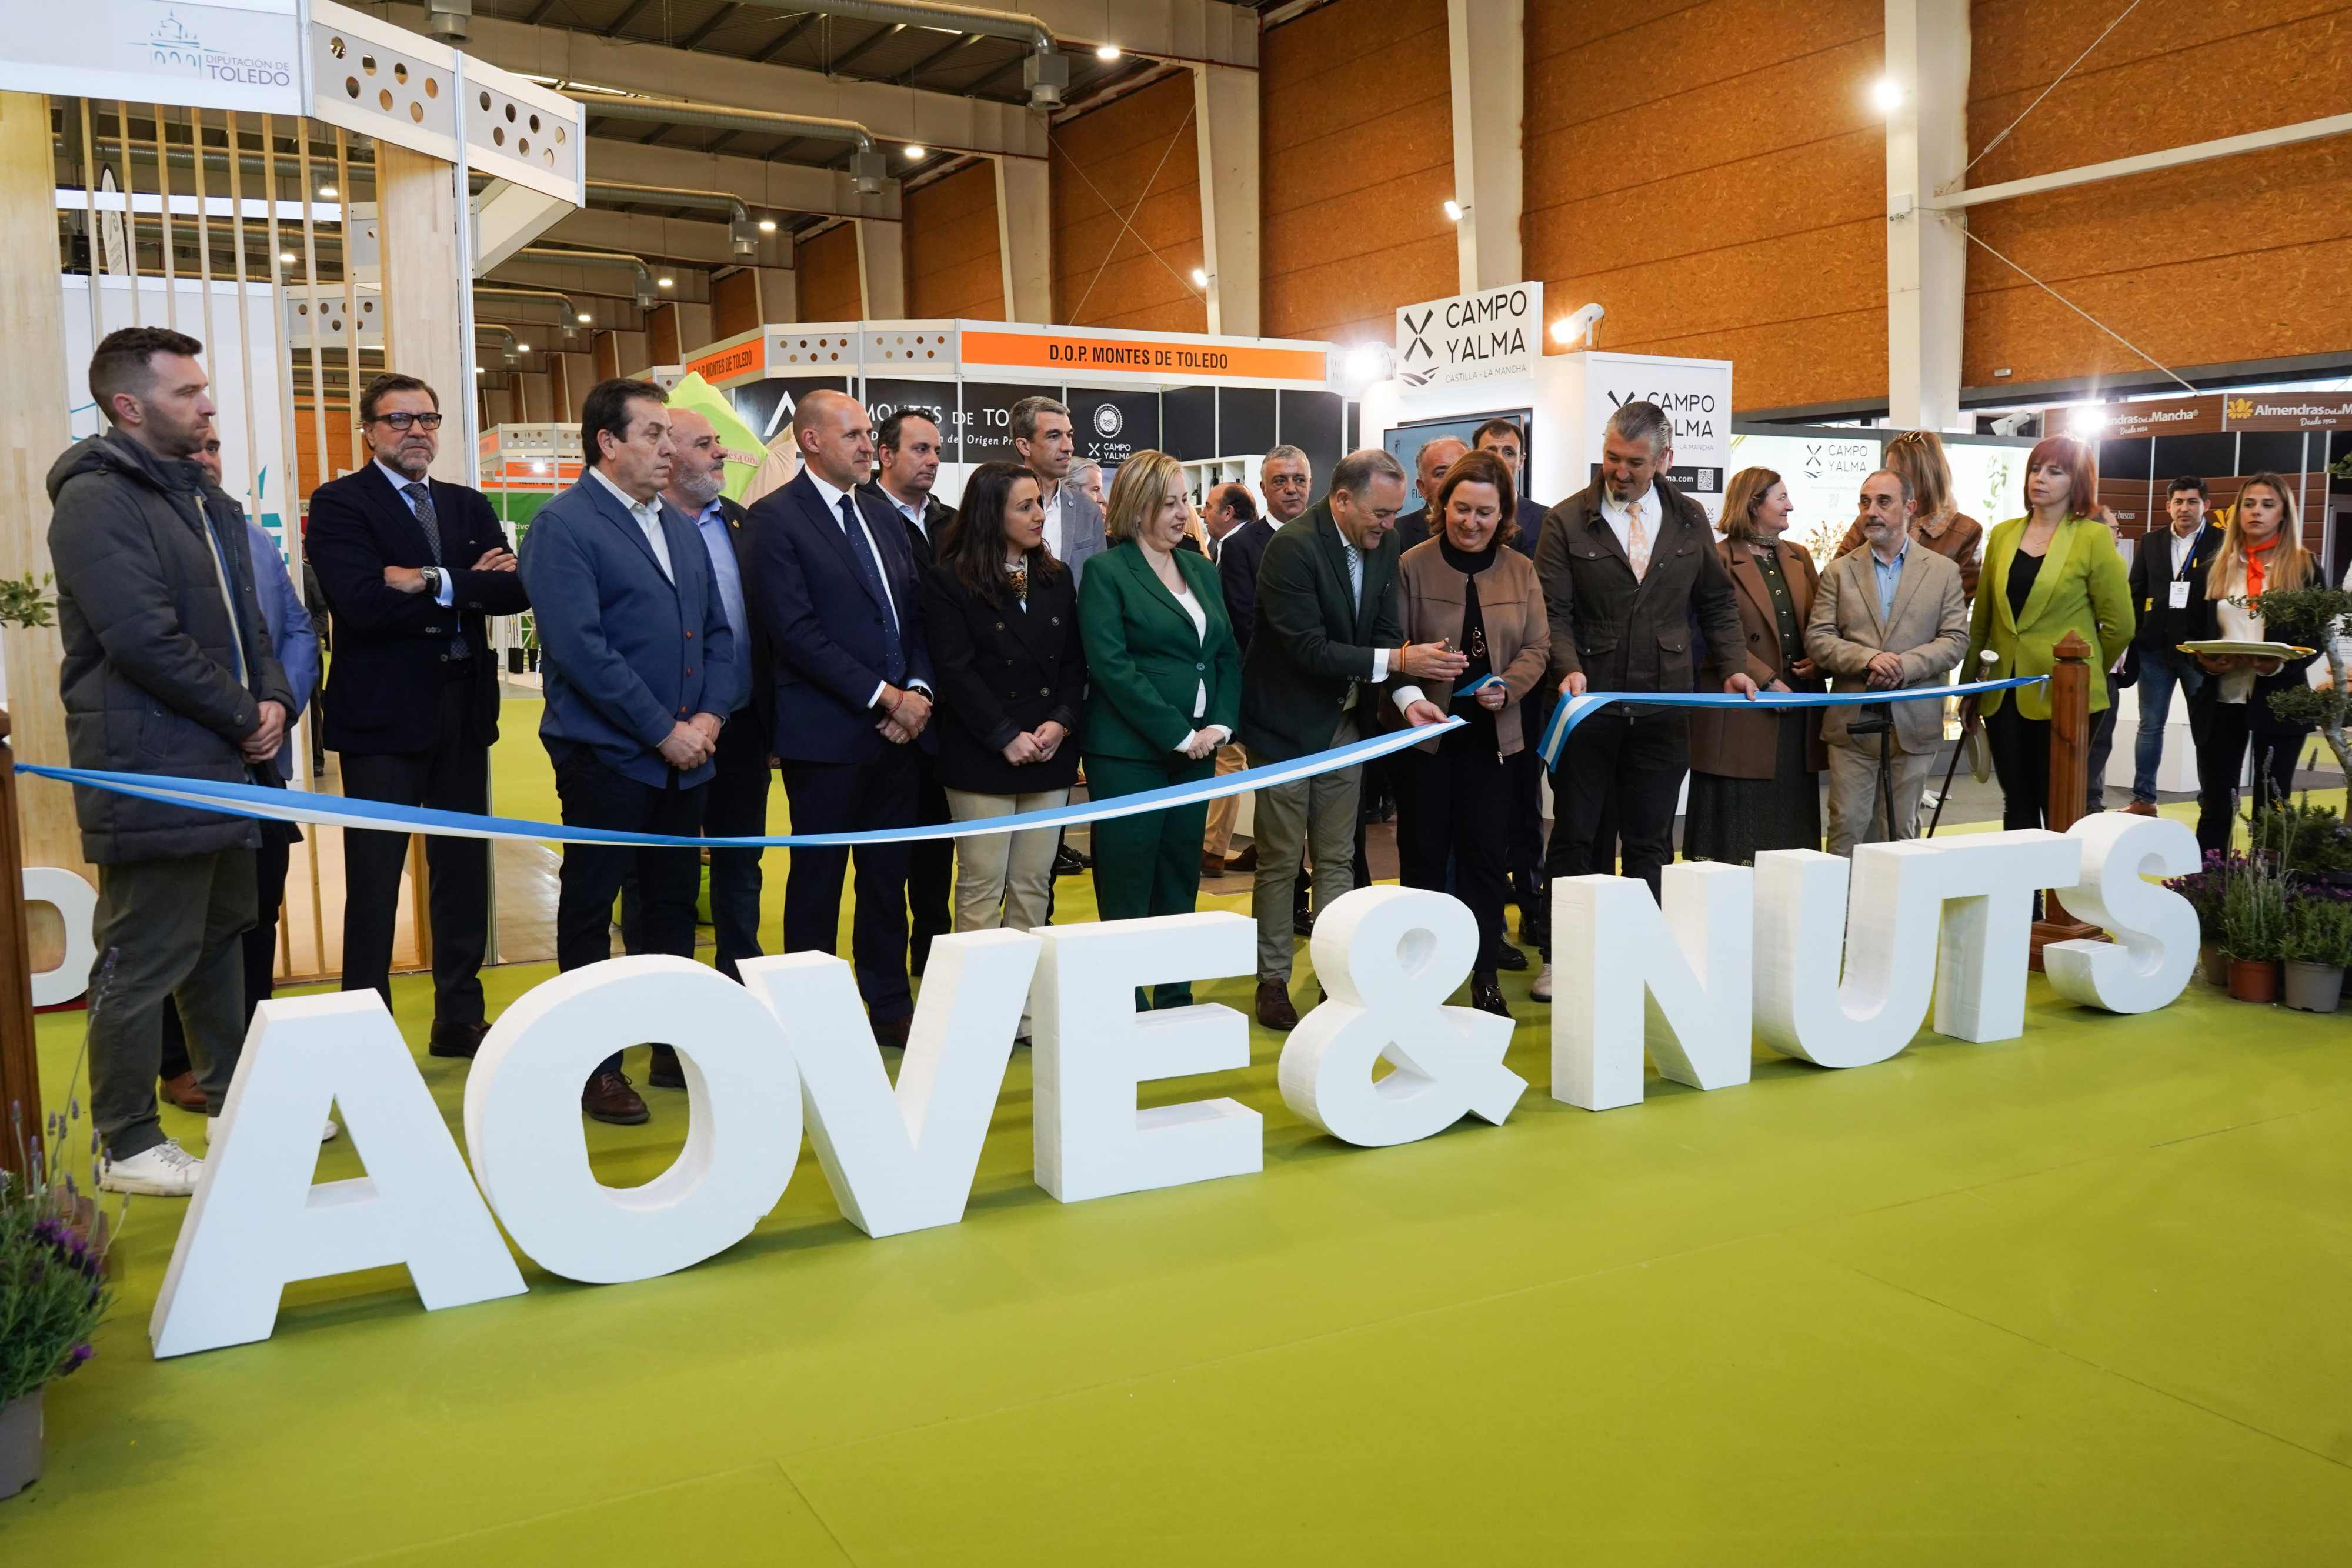 Arranca la 3ª edición de “AOVE & NUTS” en Talavera de la Reina